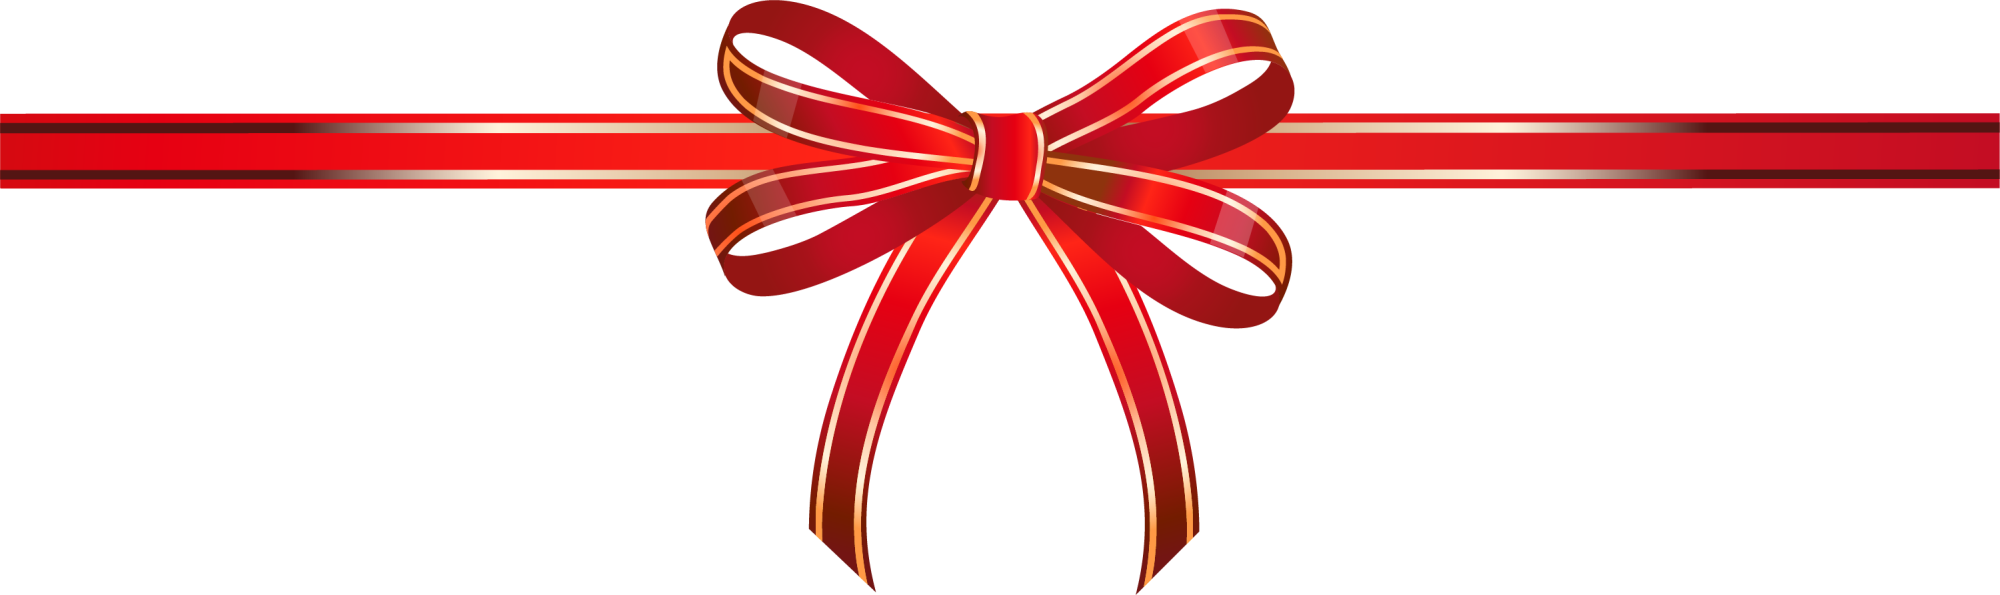 Ribbon Shoelace Knot Gift - Ribbon Shoelace Knot Gift (2000x595)